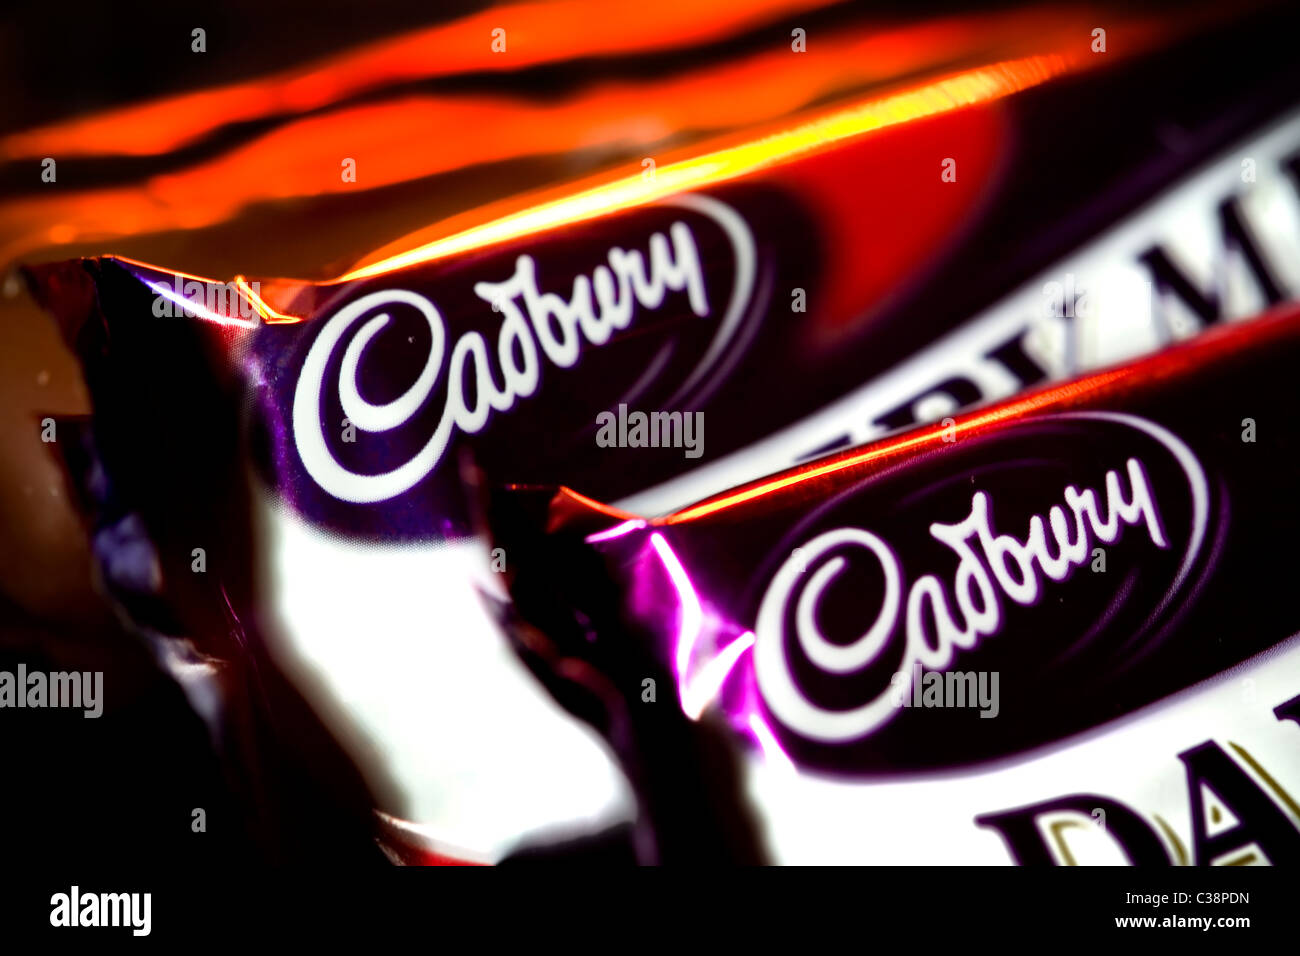 Bars of Cadbury's Dairy Milk chocolate. Stock Photo